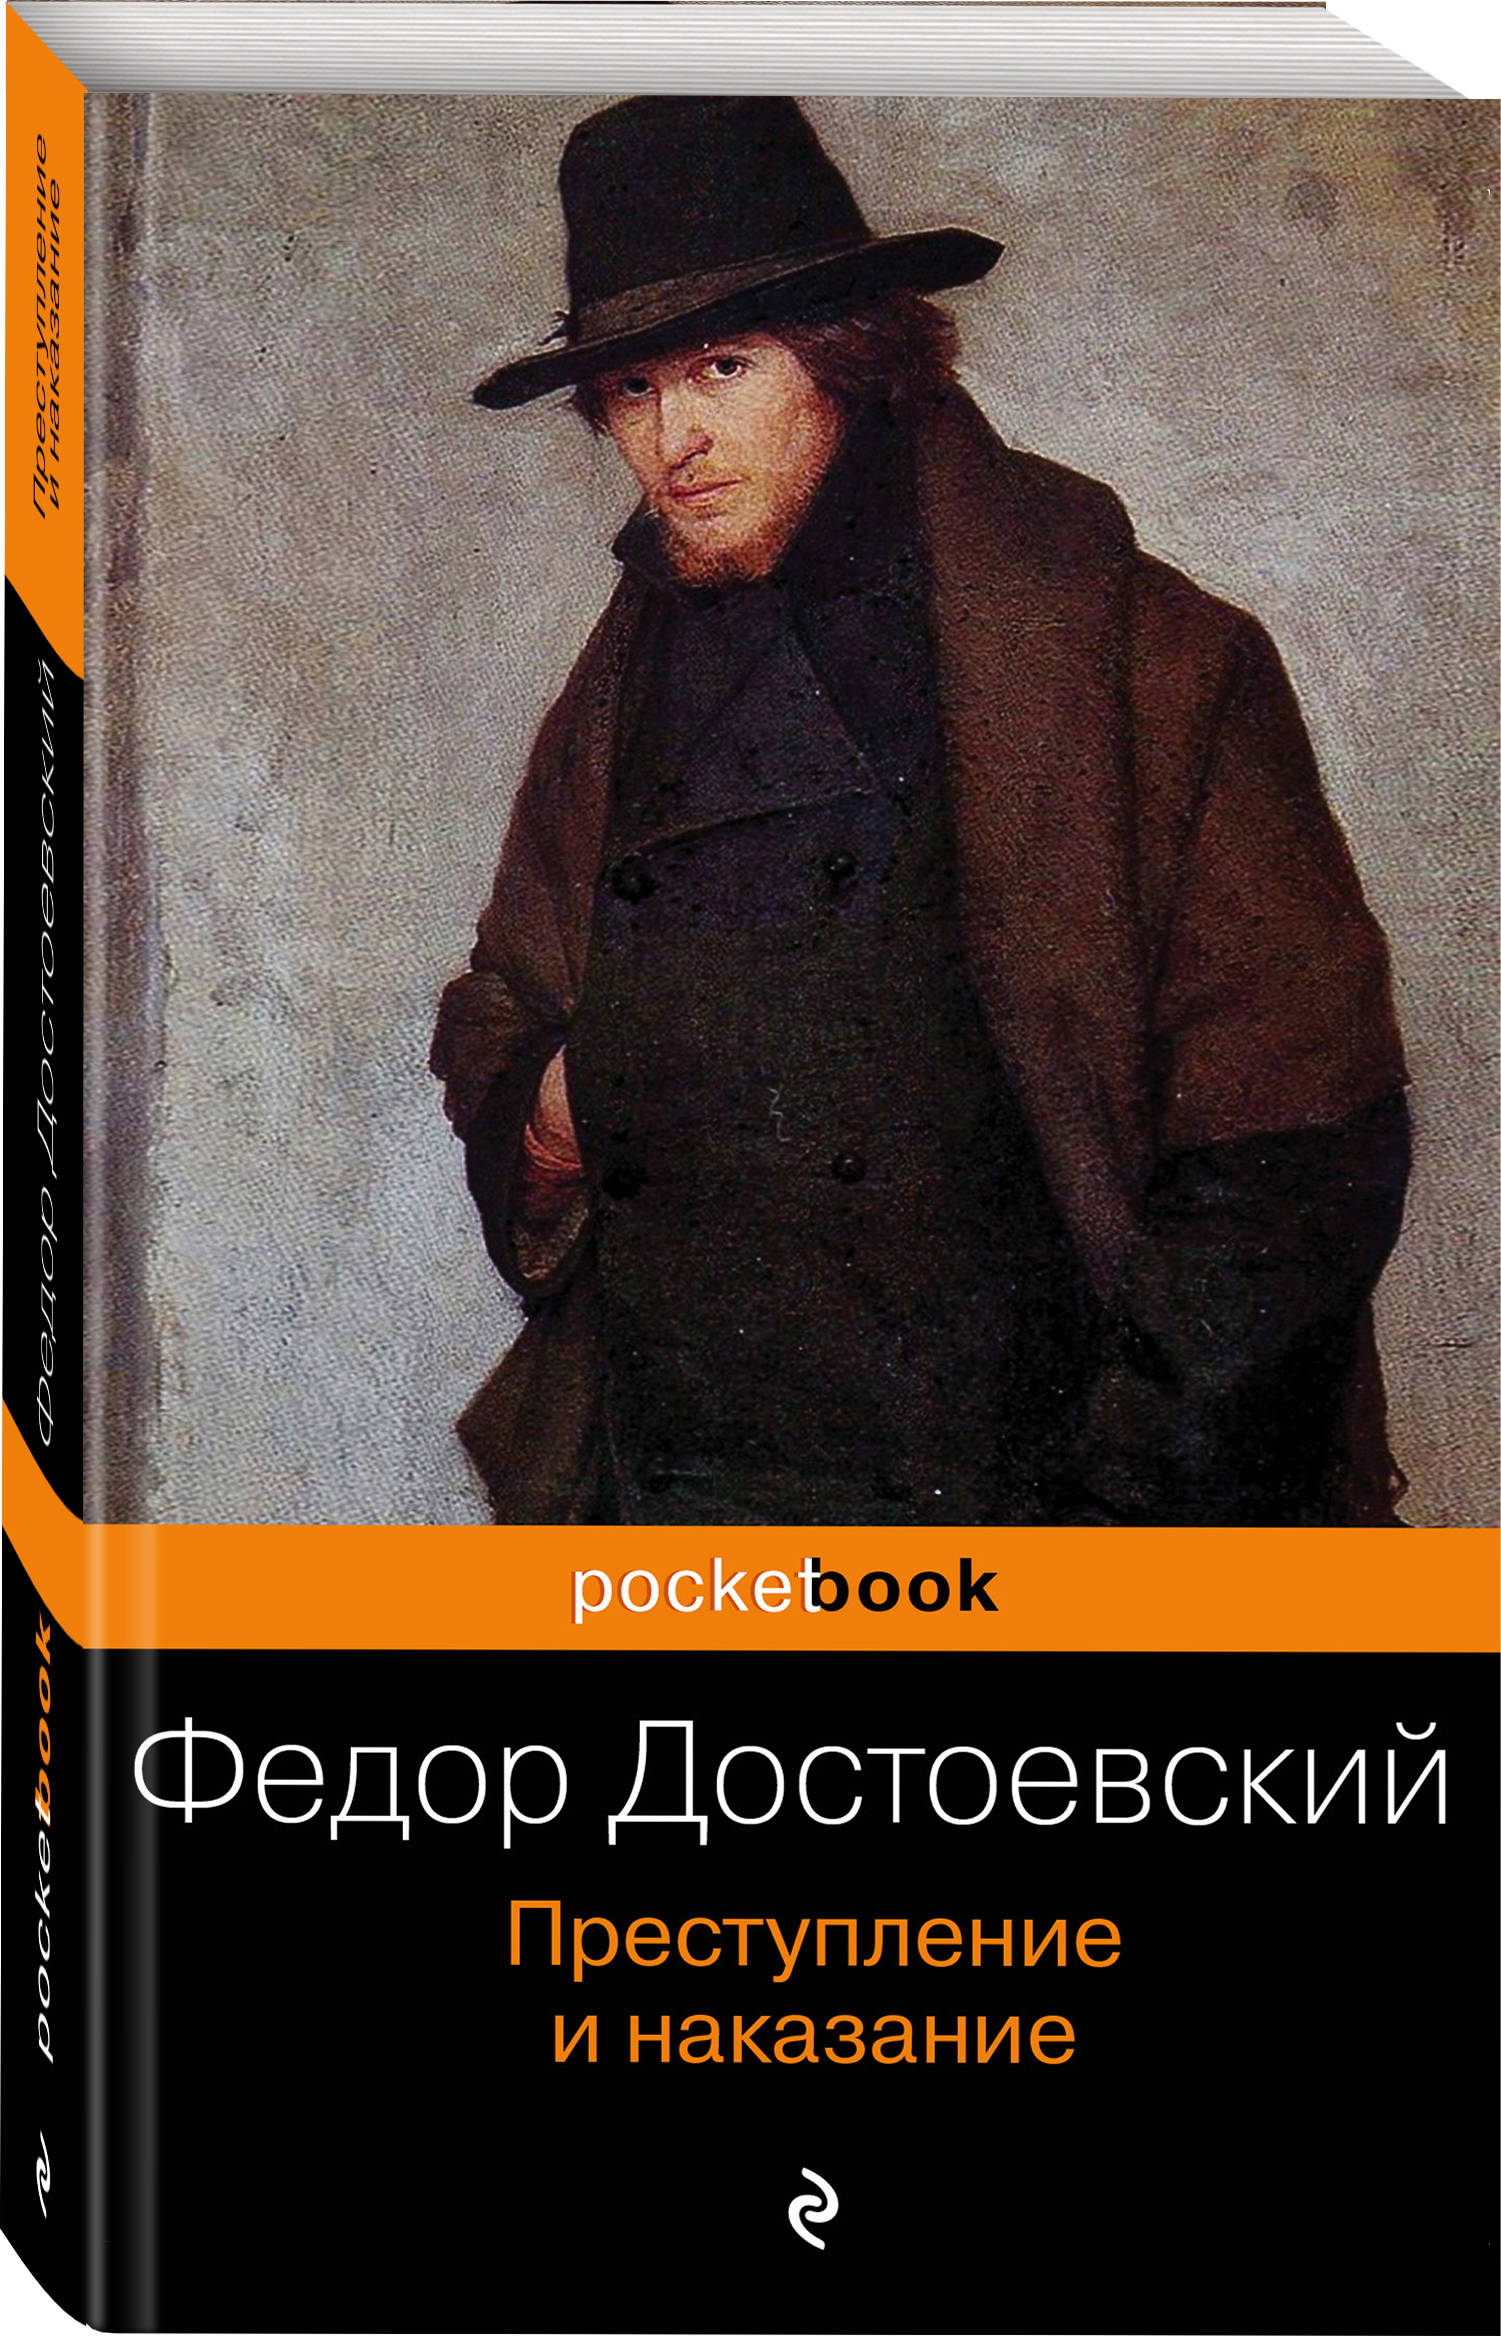 Фёдор Михайлович Достоевский преступление и наказание